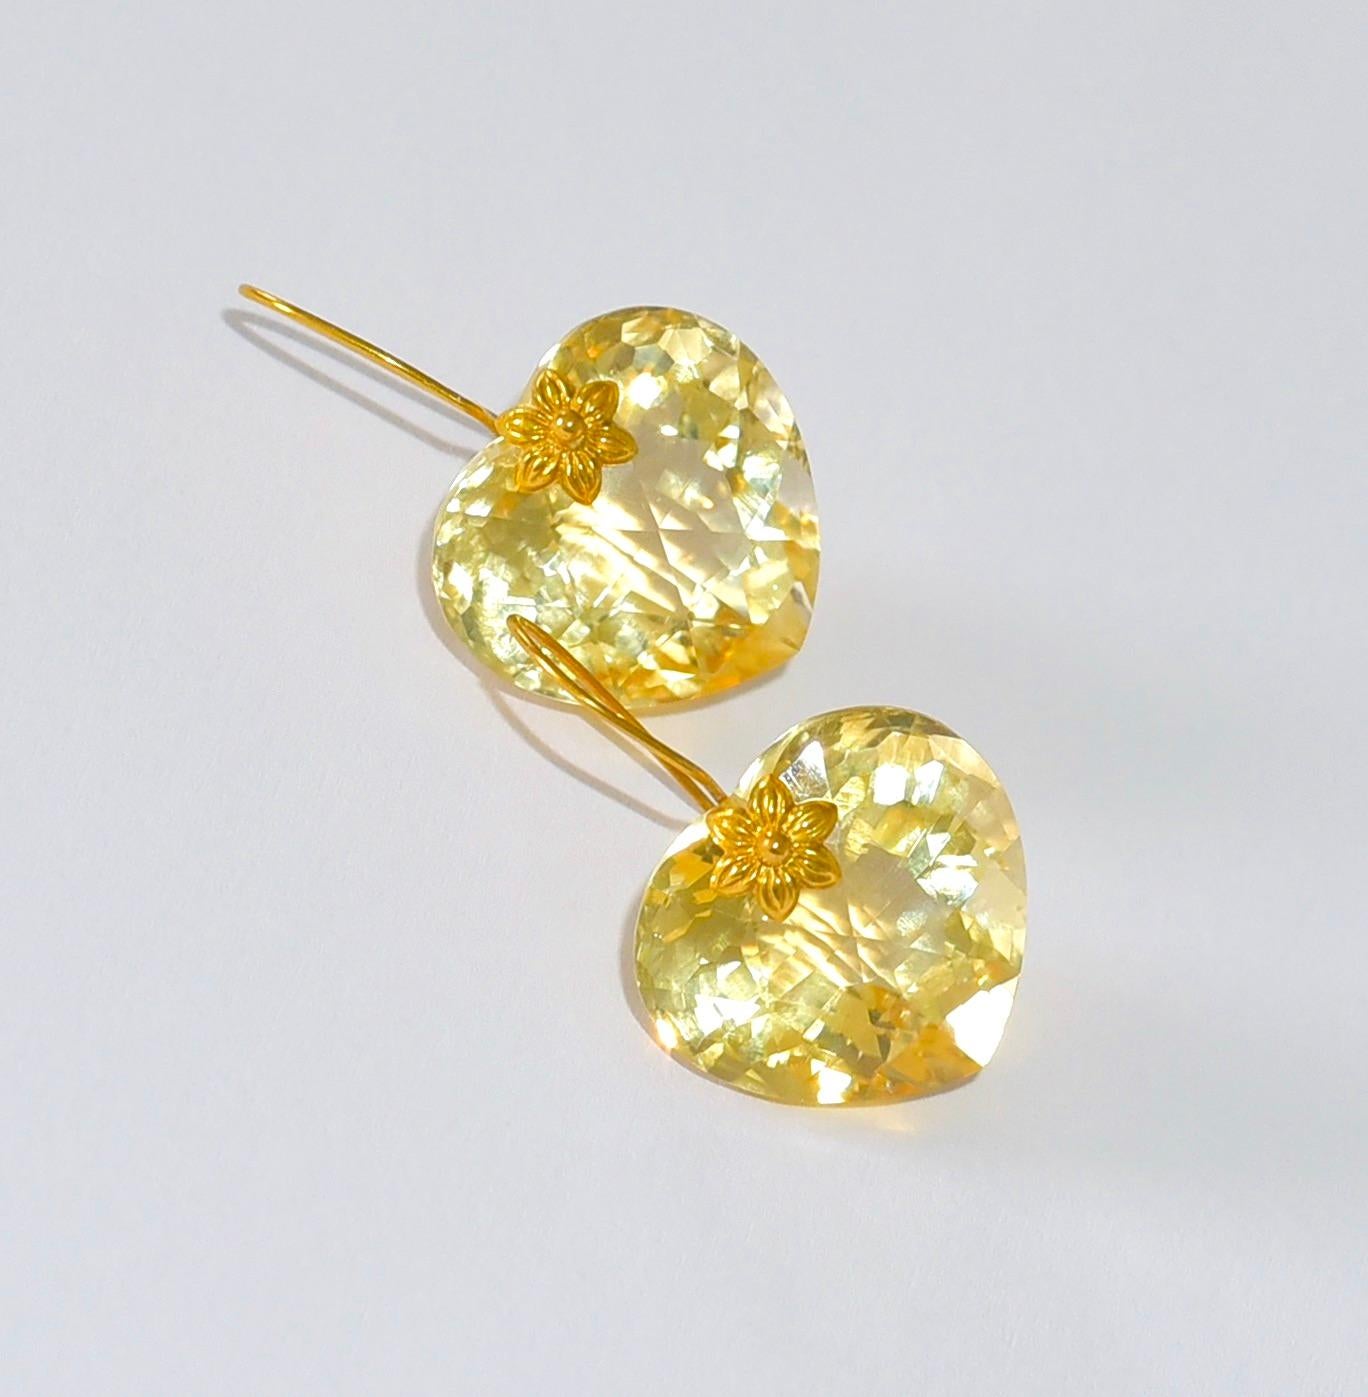 Lemon Quartz Heart Shape Earrings in 18K Solid Yellow Gold 1